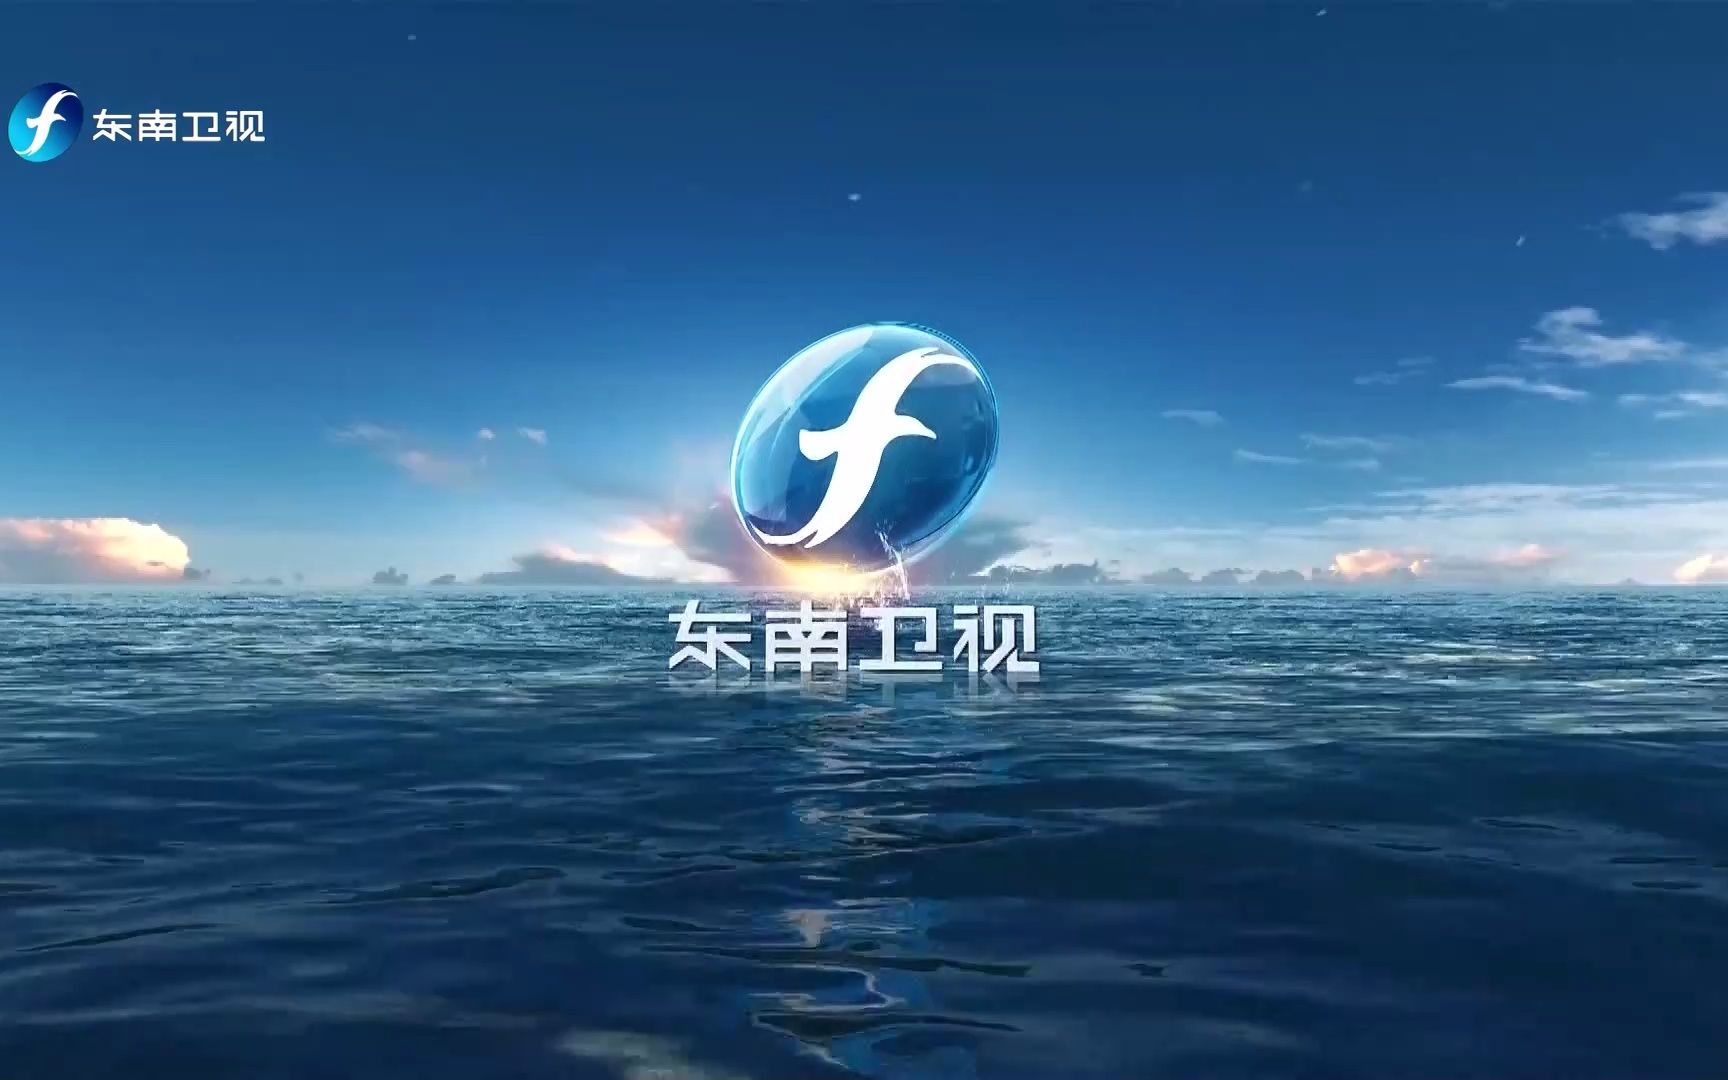 福建东南卫视电视台图片